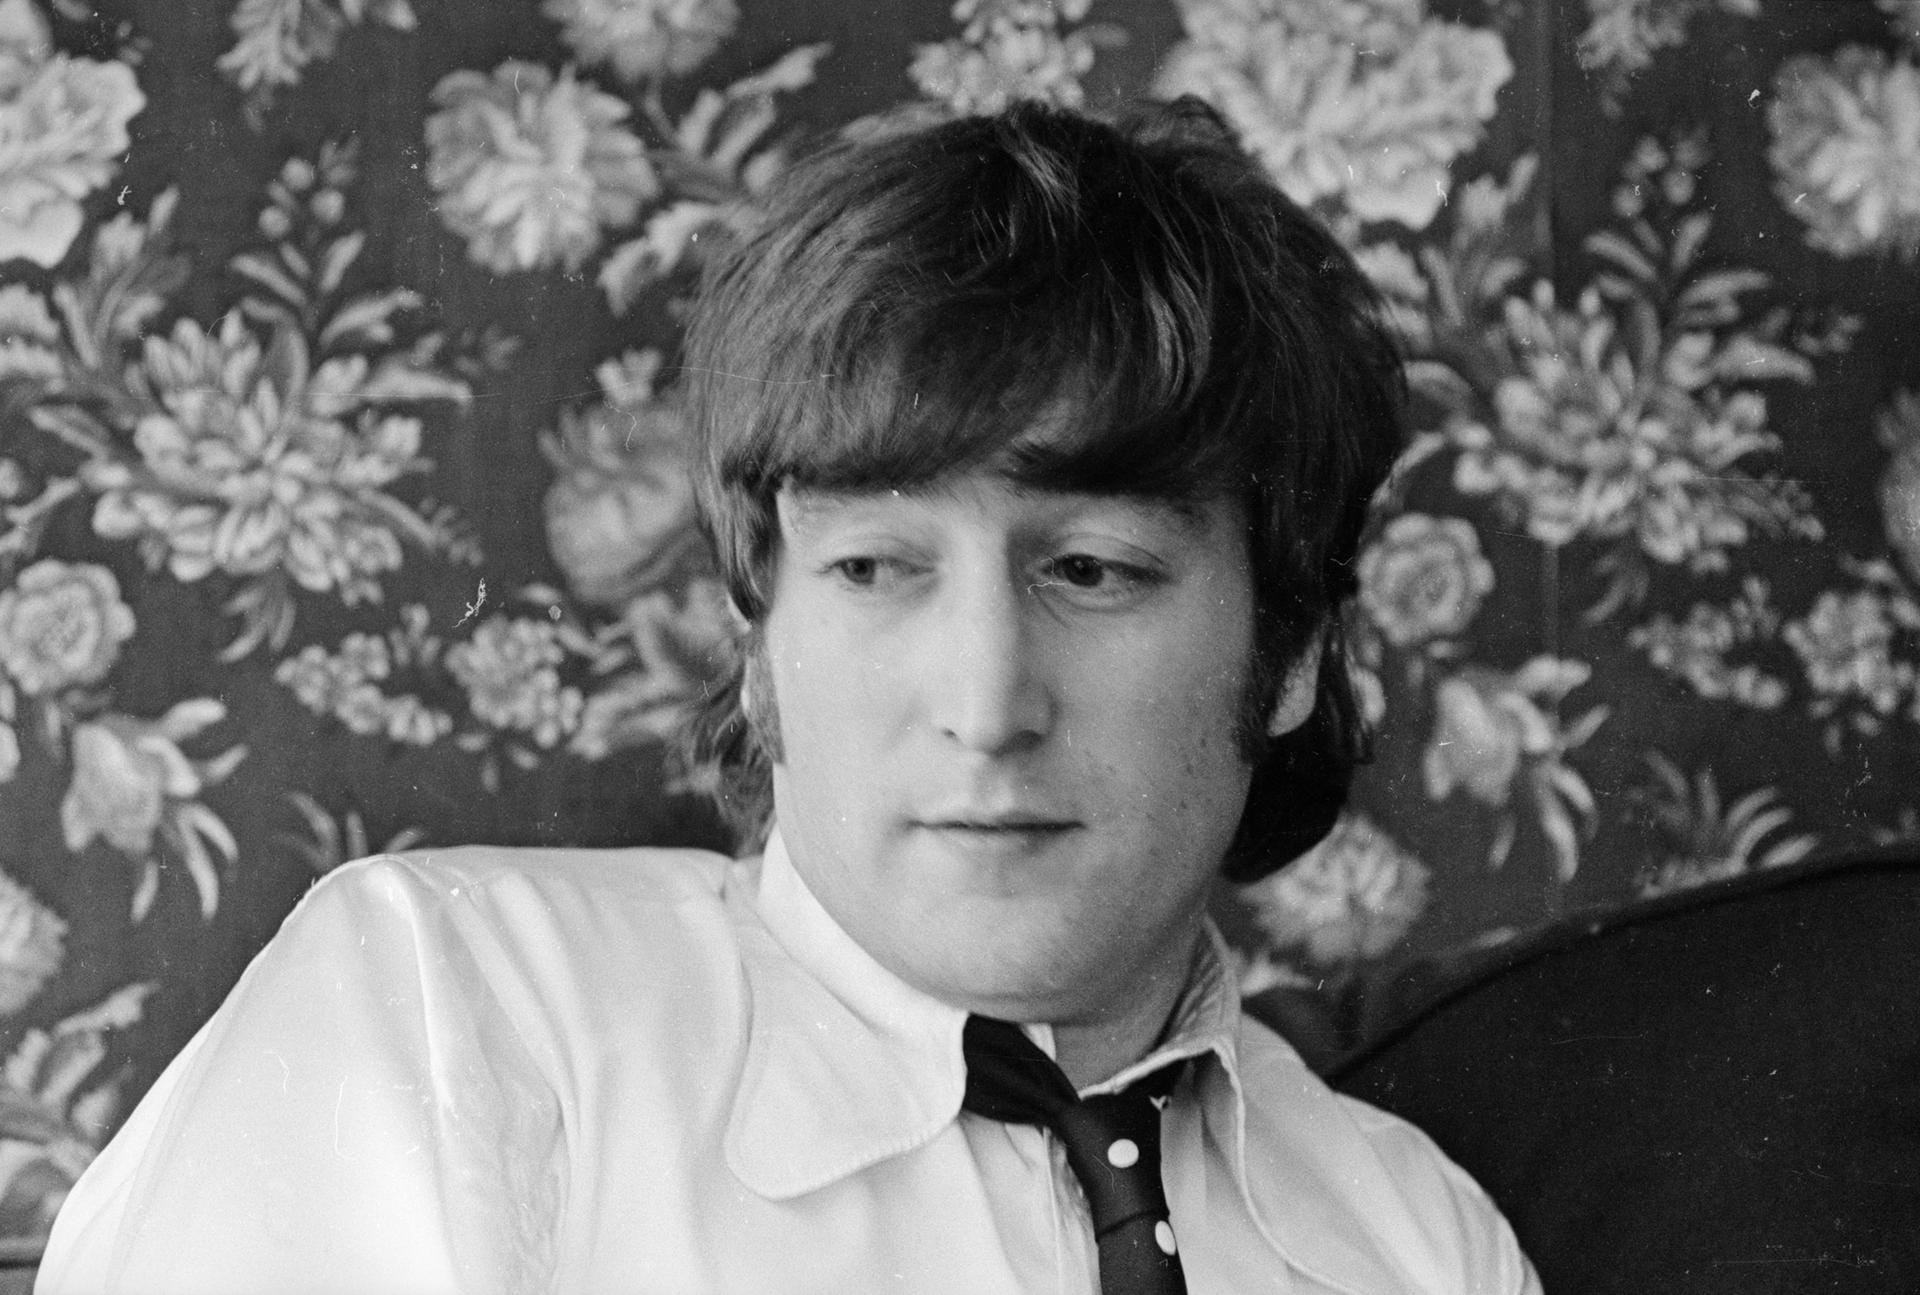 Einer der berühmtesten aber auch tragischsten Stalking-Fälle ist der von John Lennon (1940-1980). 1980 wurde der Beatles-Mitgründer von einem fanatischen Fan vor seinem Haus in New York erschossen.